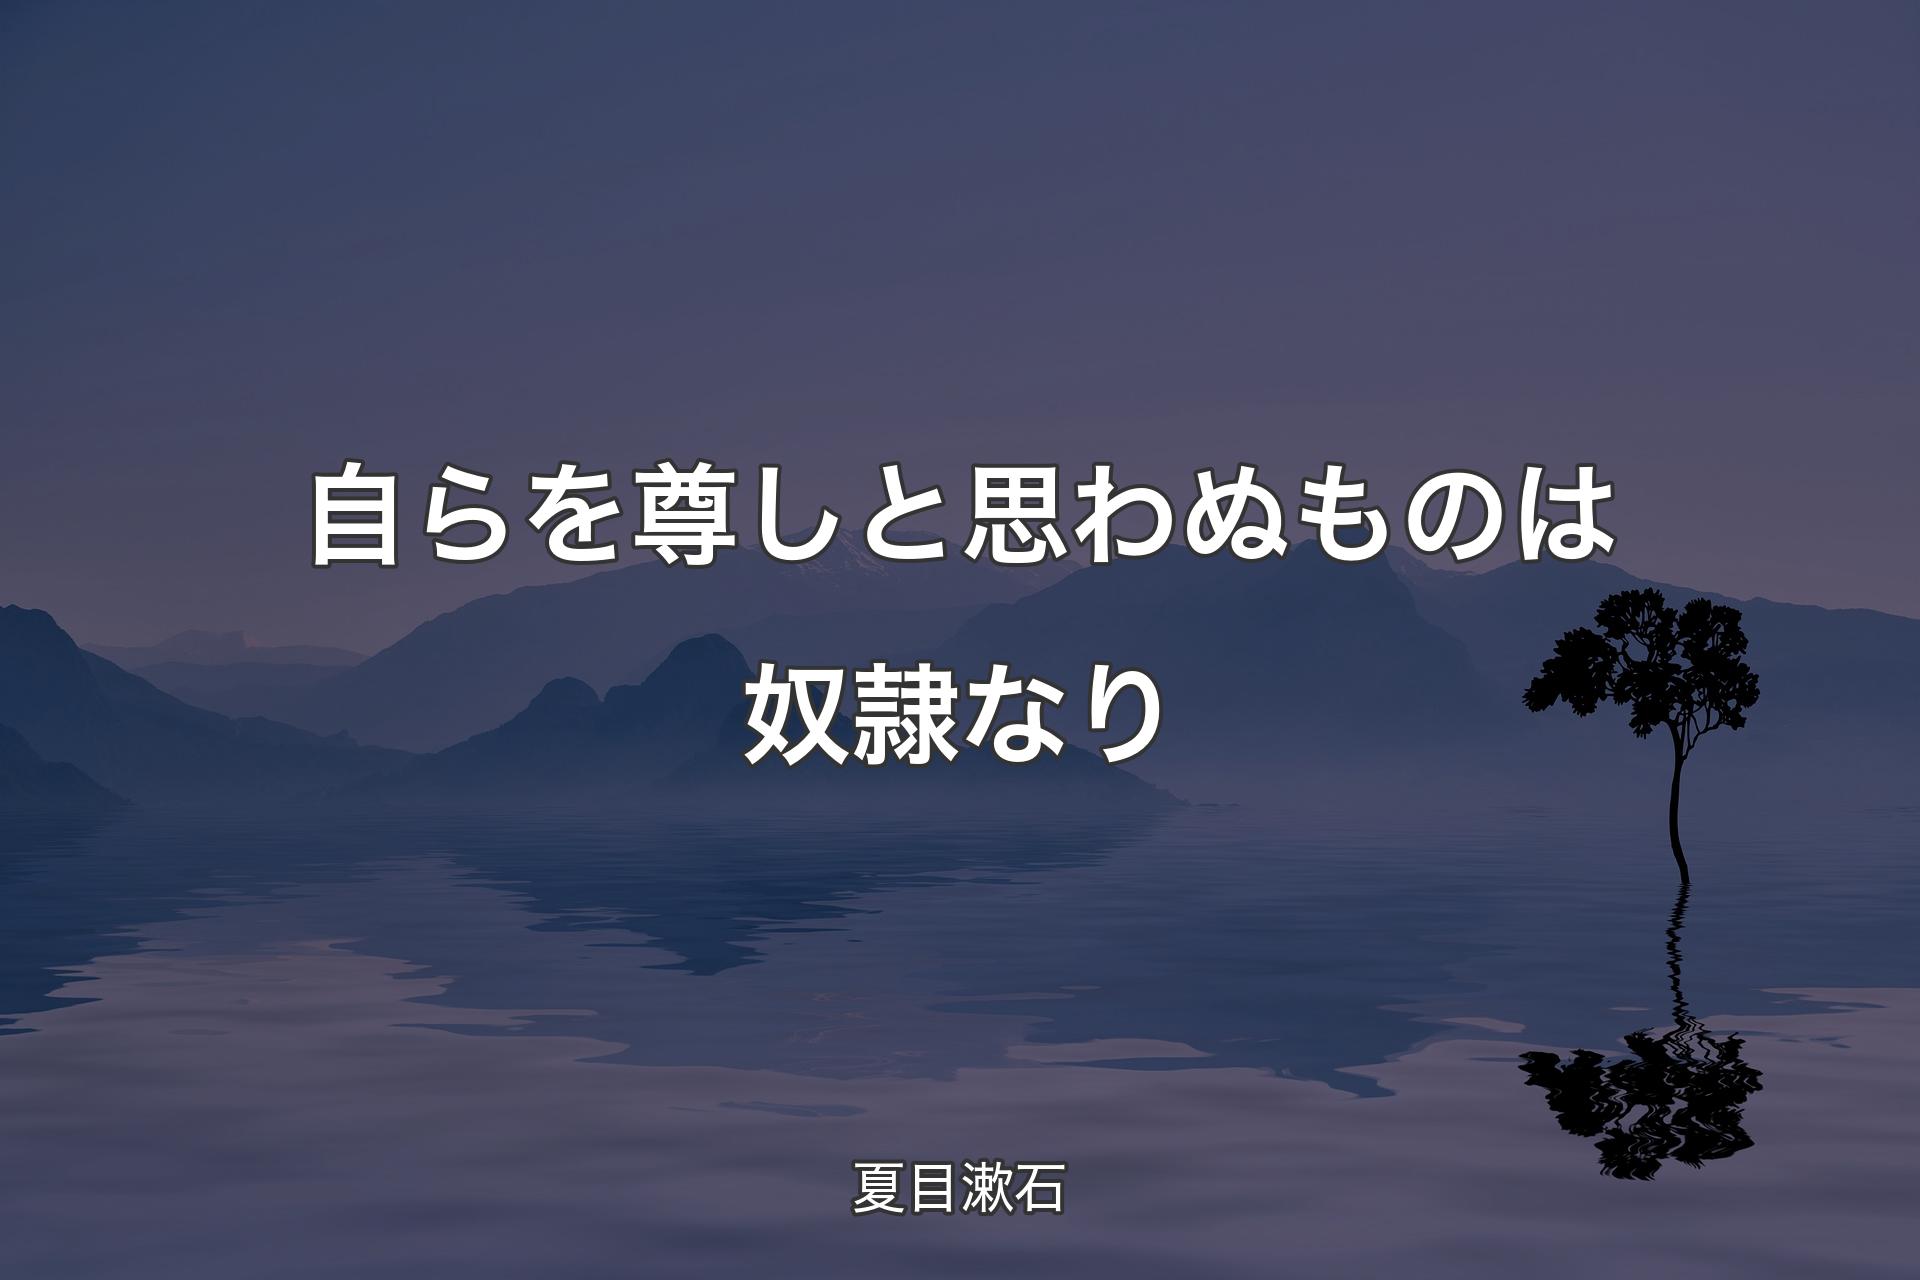 【背景4】自らを尊しと思わぬものは奴隷なり - 夏目漱石